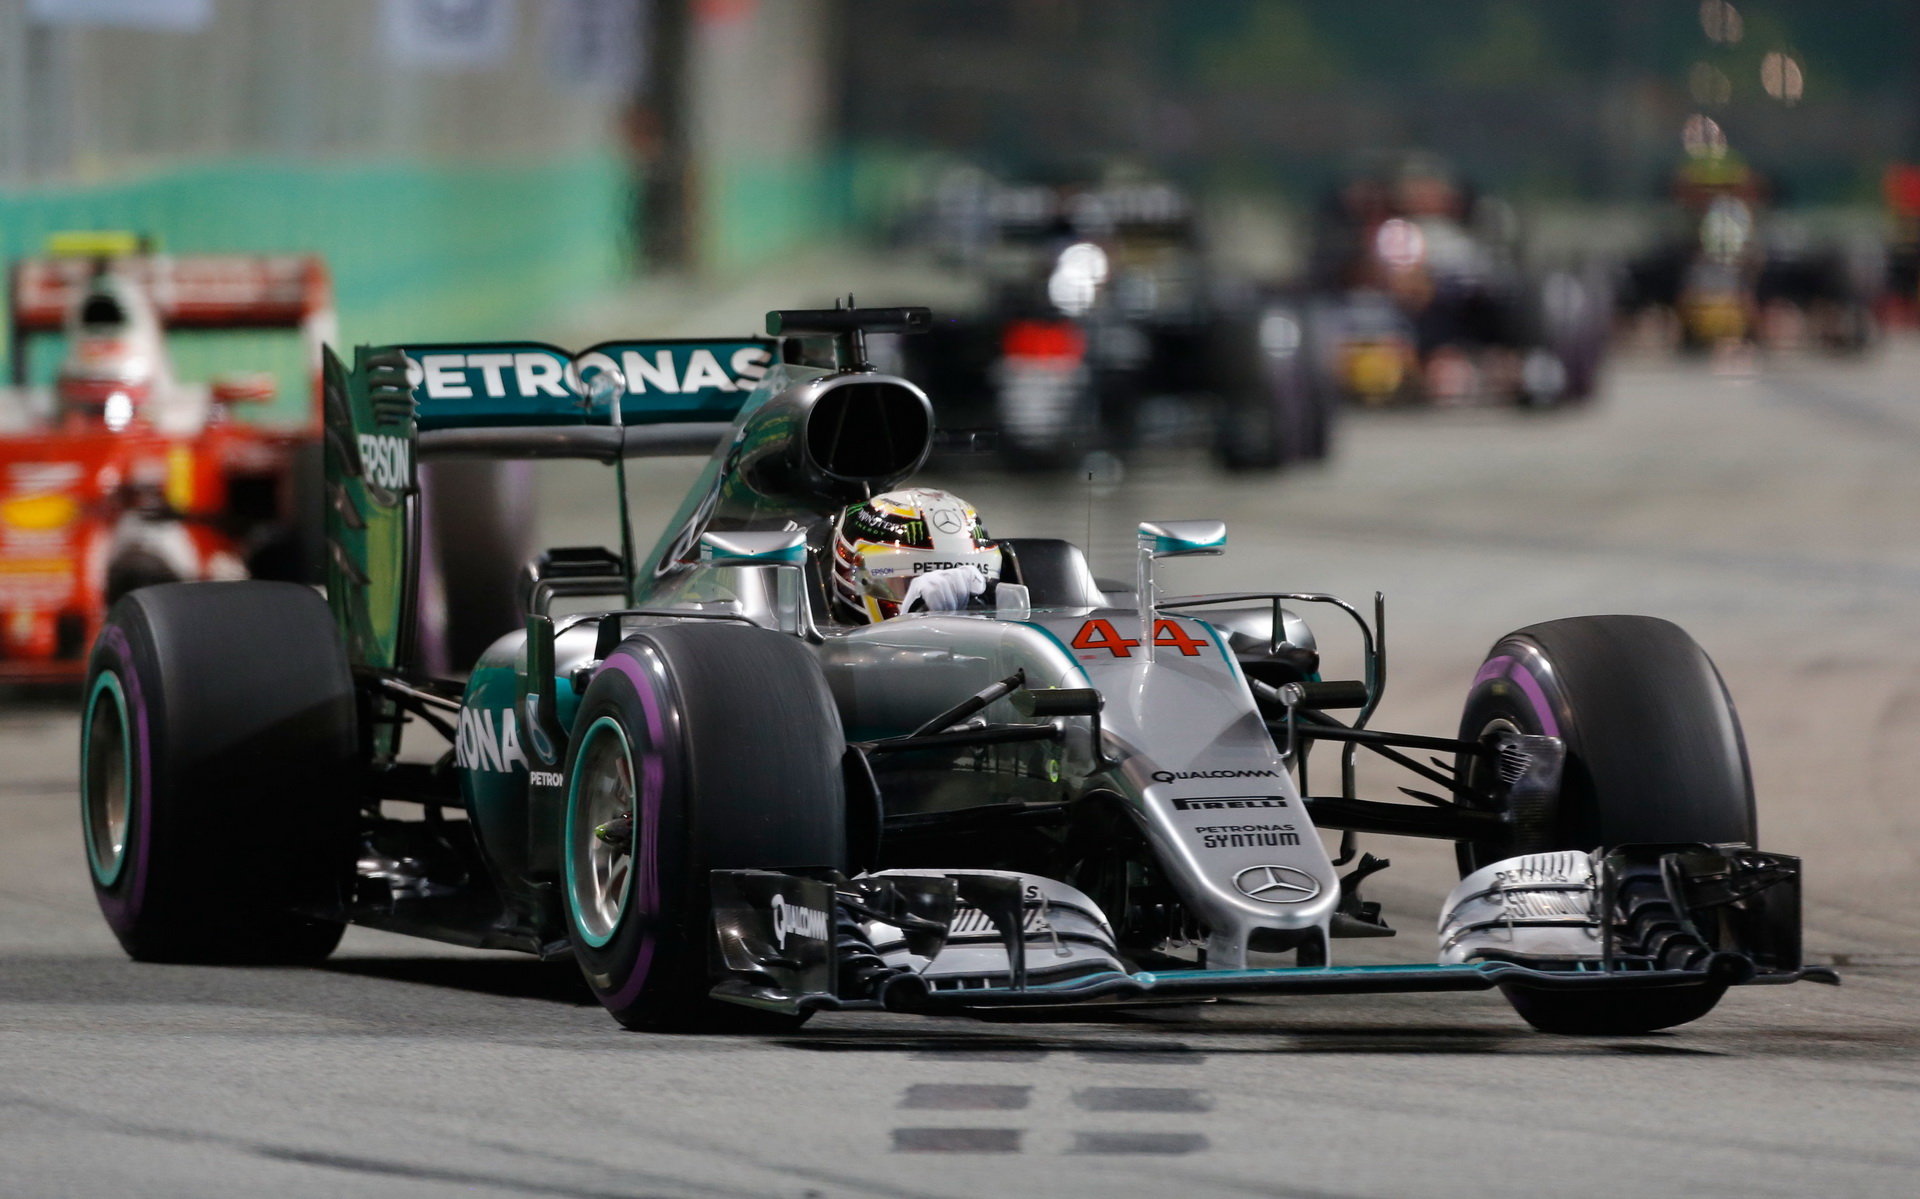 Lewis Hamilton v Singapuru uhájil třetí místo před Kimim Räikkönenem